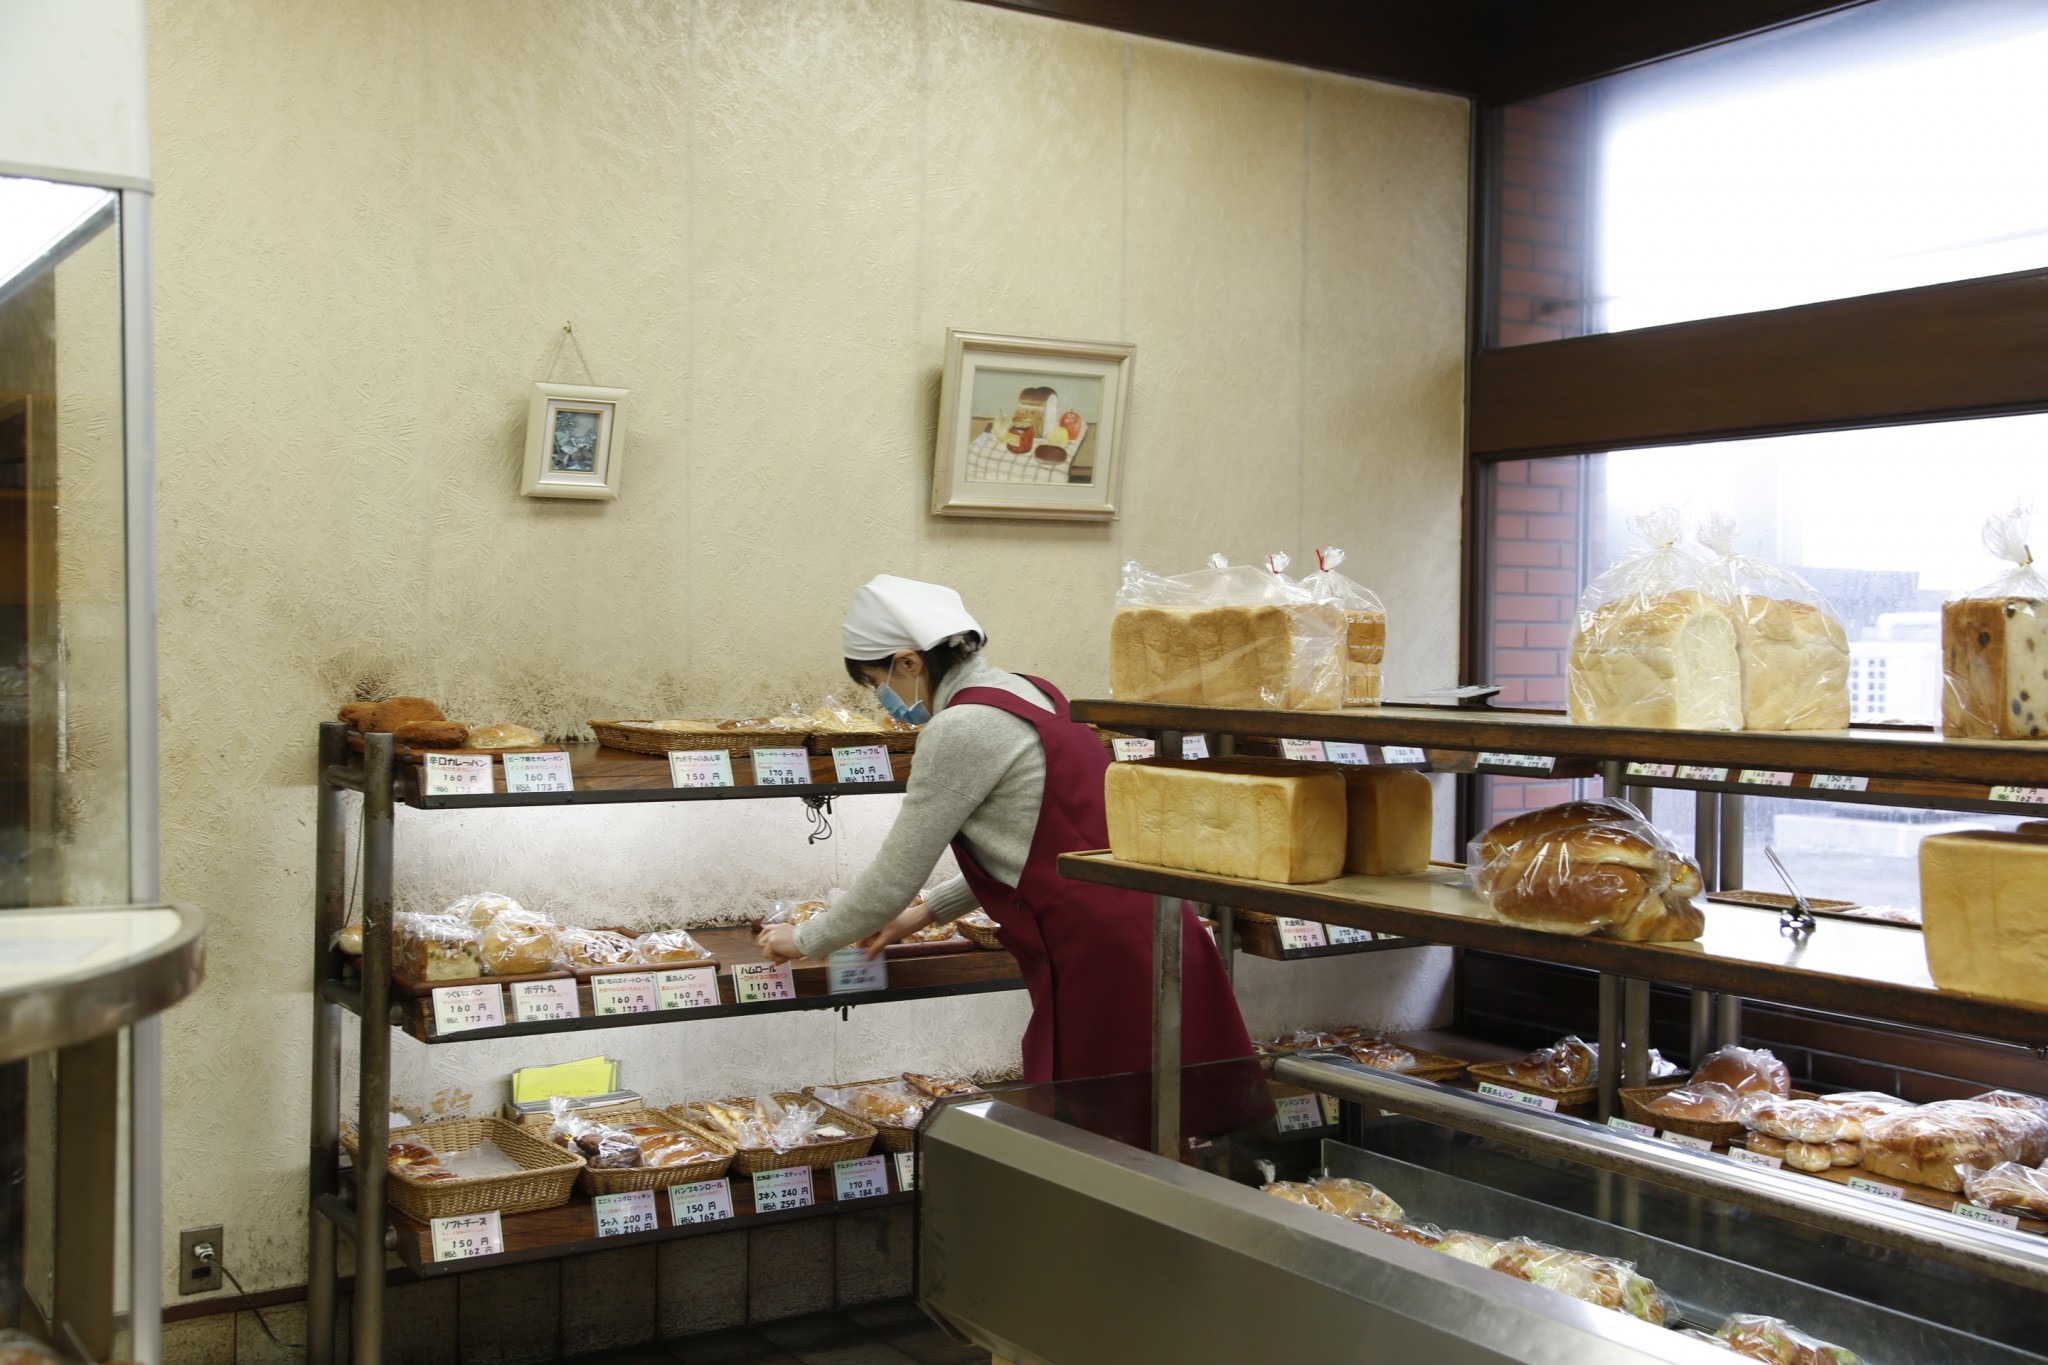 130種ほどあるパンはどれもビッグサイズ。惣菜パンも豊富で、地元の学生たちにも人気のパン屋さんだ。